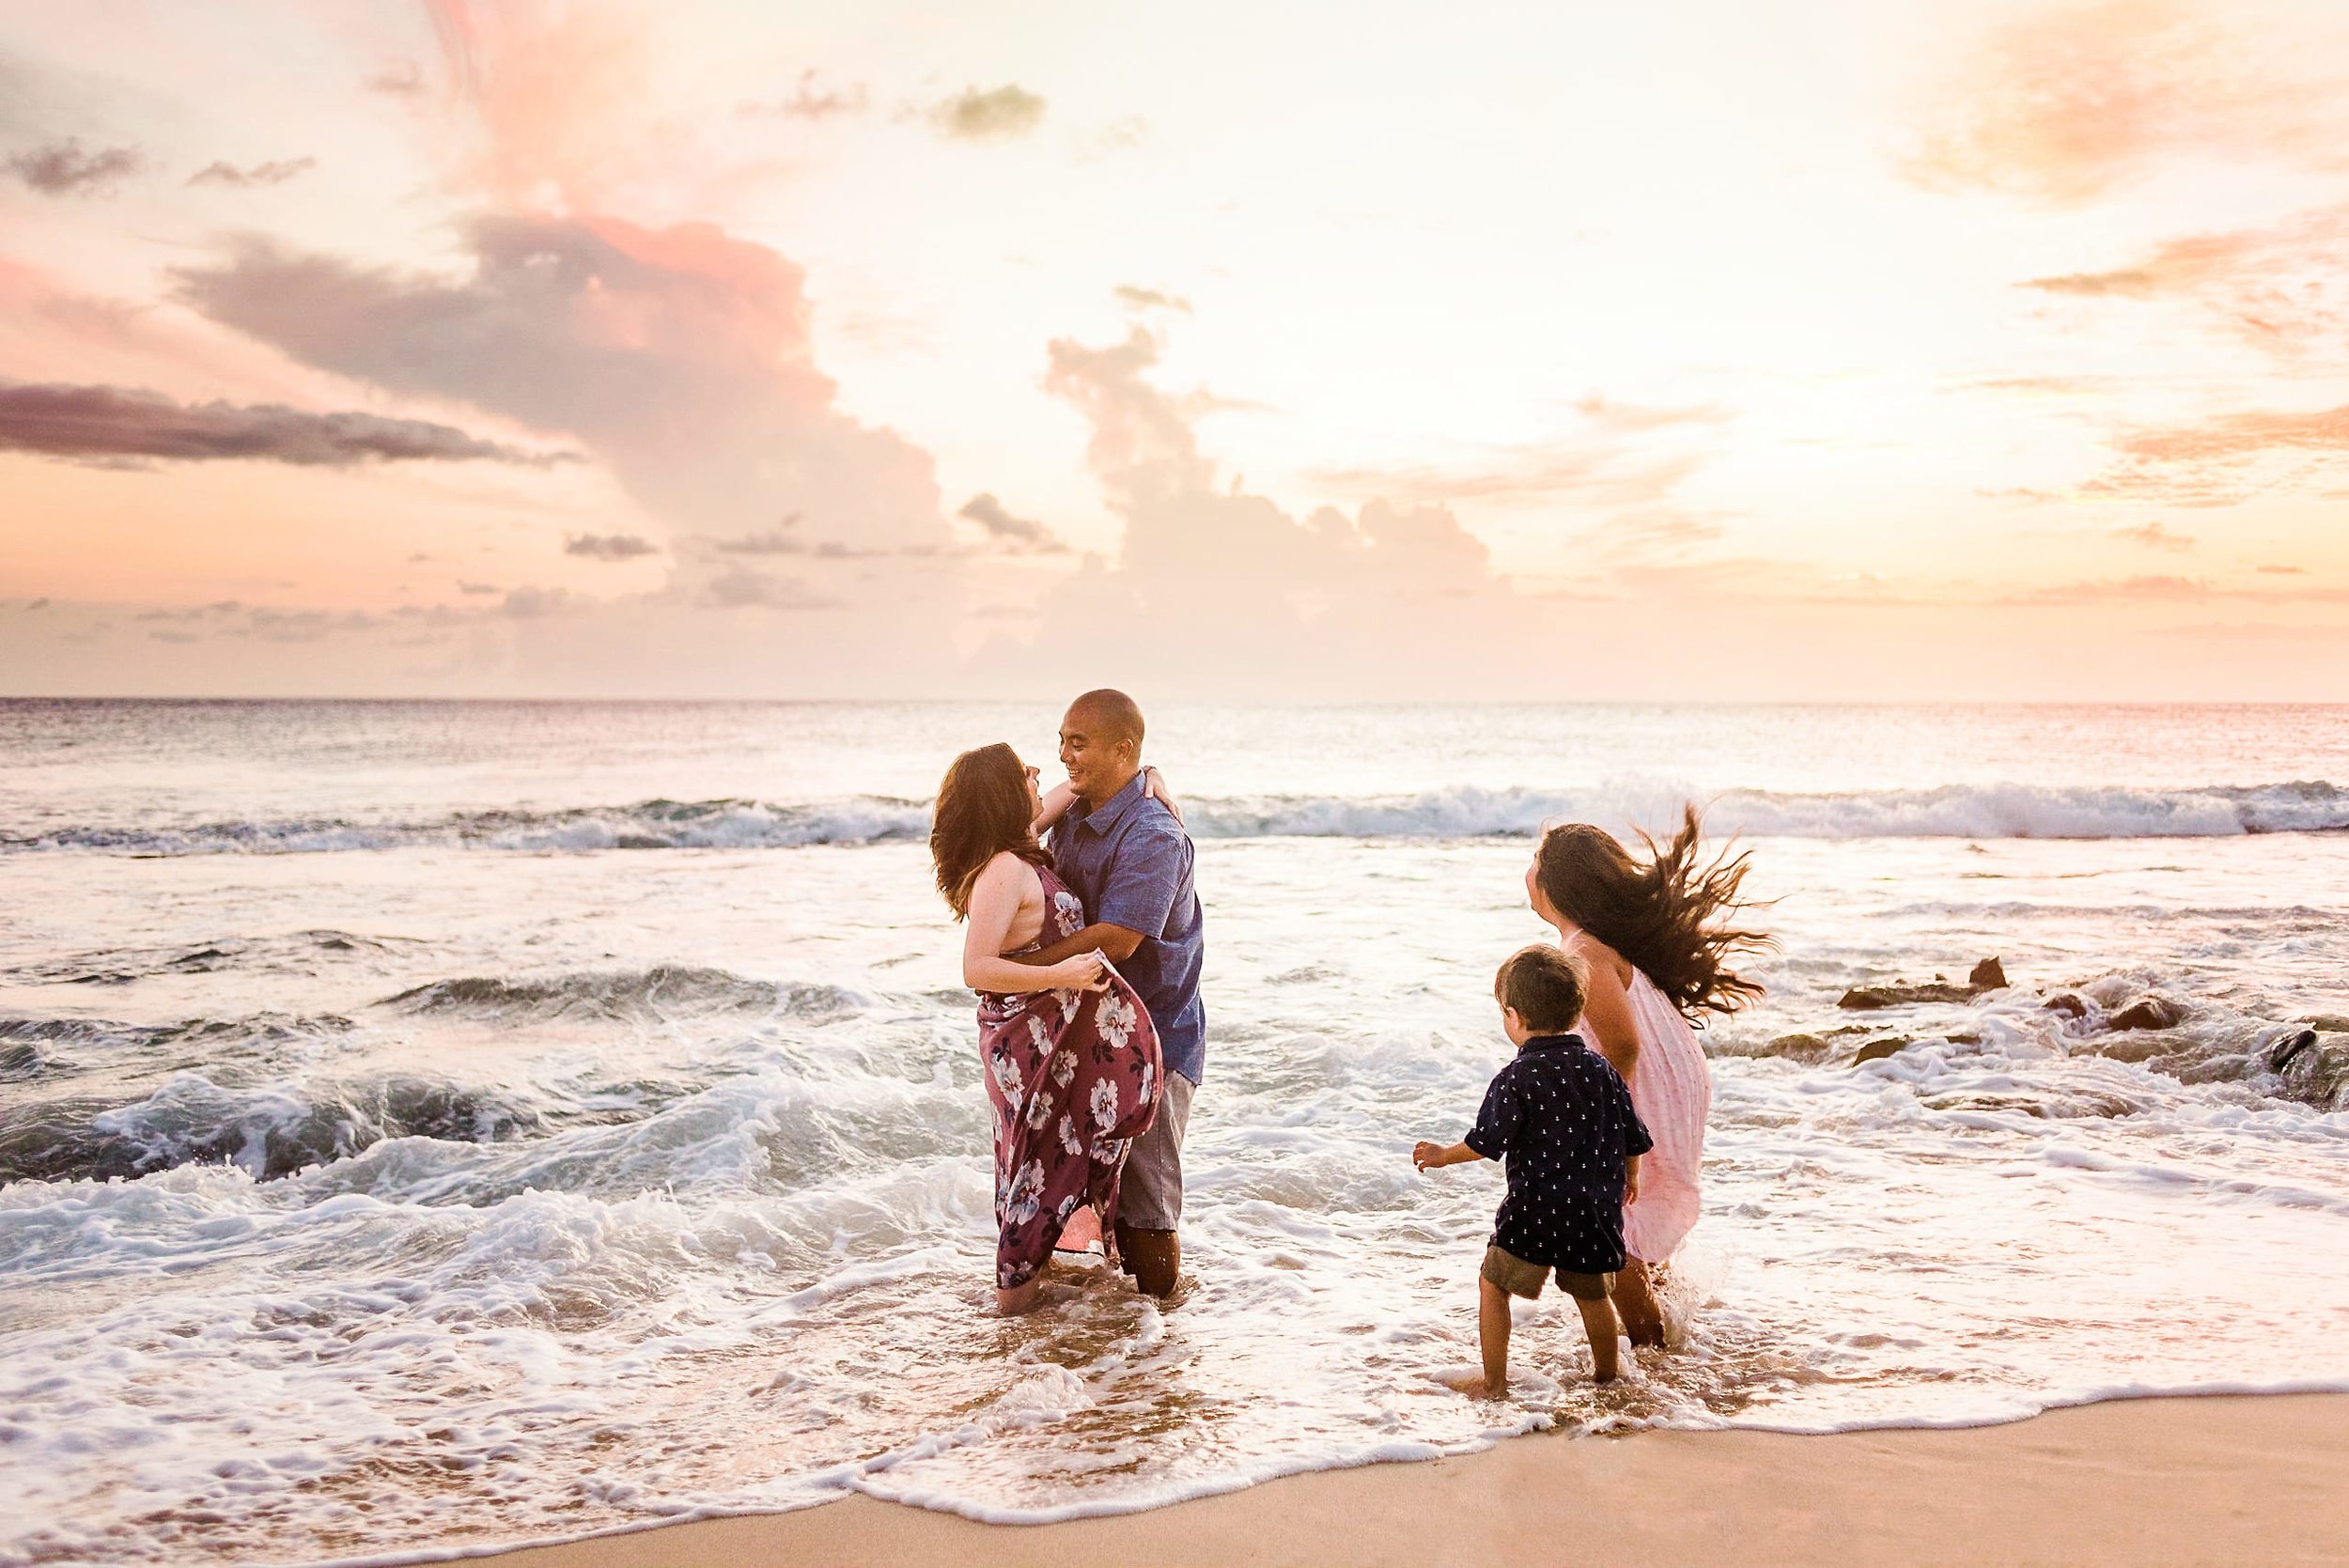 Waikola-Photographer-Family-Vacation-15.jpg